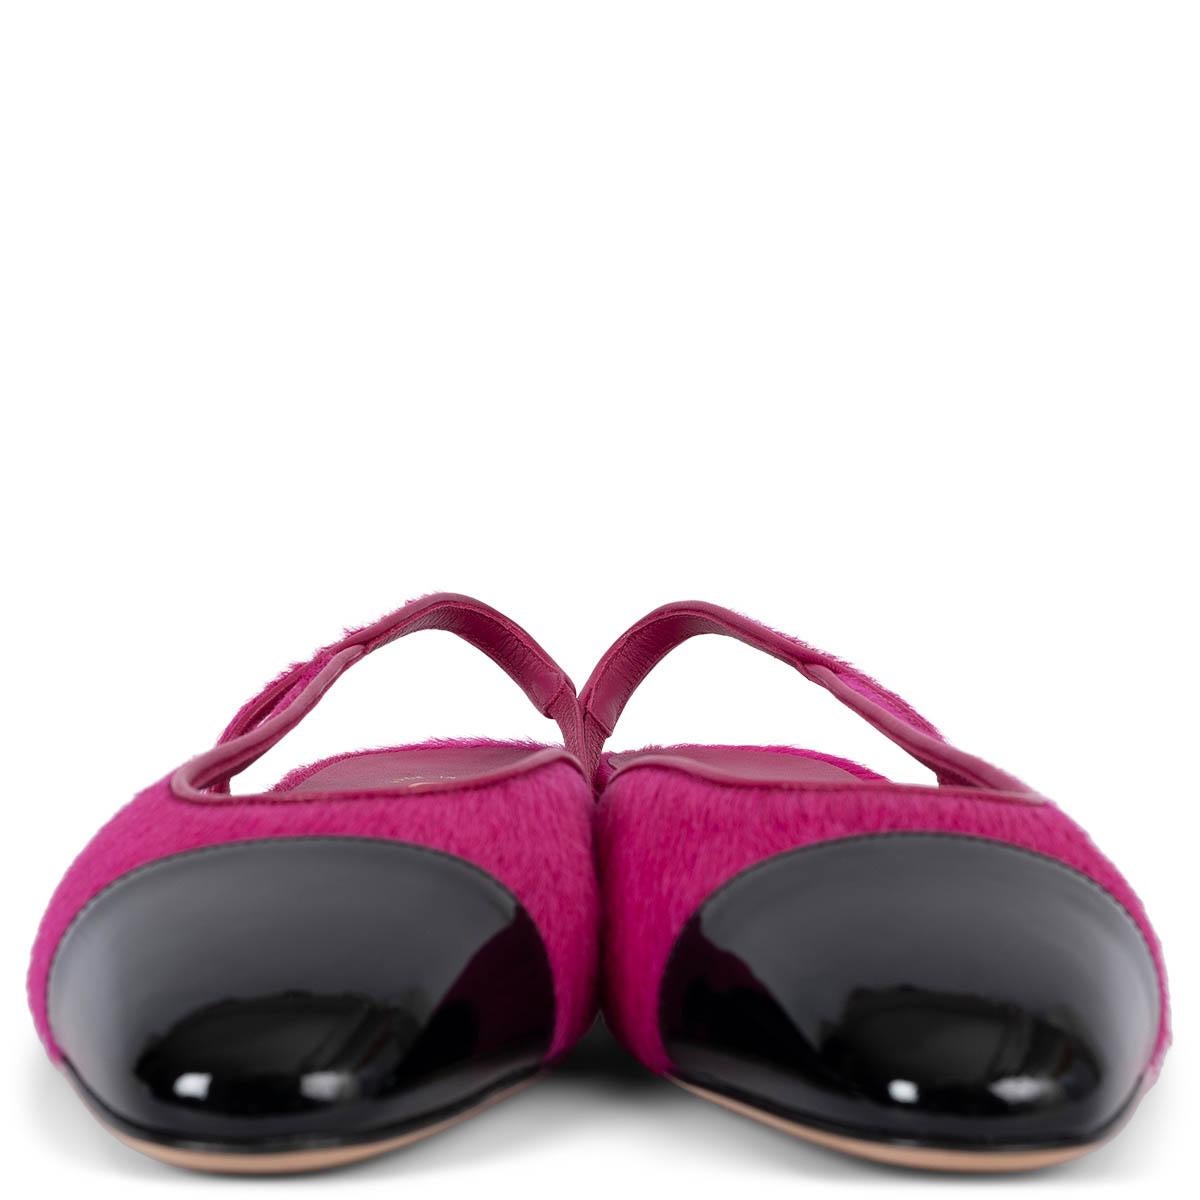 100% authentique Chanel slingback flats in pink calf hair with classic black patent leather cap toe. Logo CC en métal doré sur le talon. État neuf. Livré avec un sac à poussière. 

Mesures
Modèle	G31319
Taille imprimée	38.5
Taille des